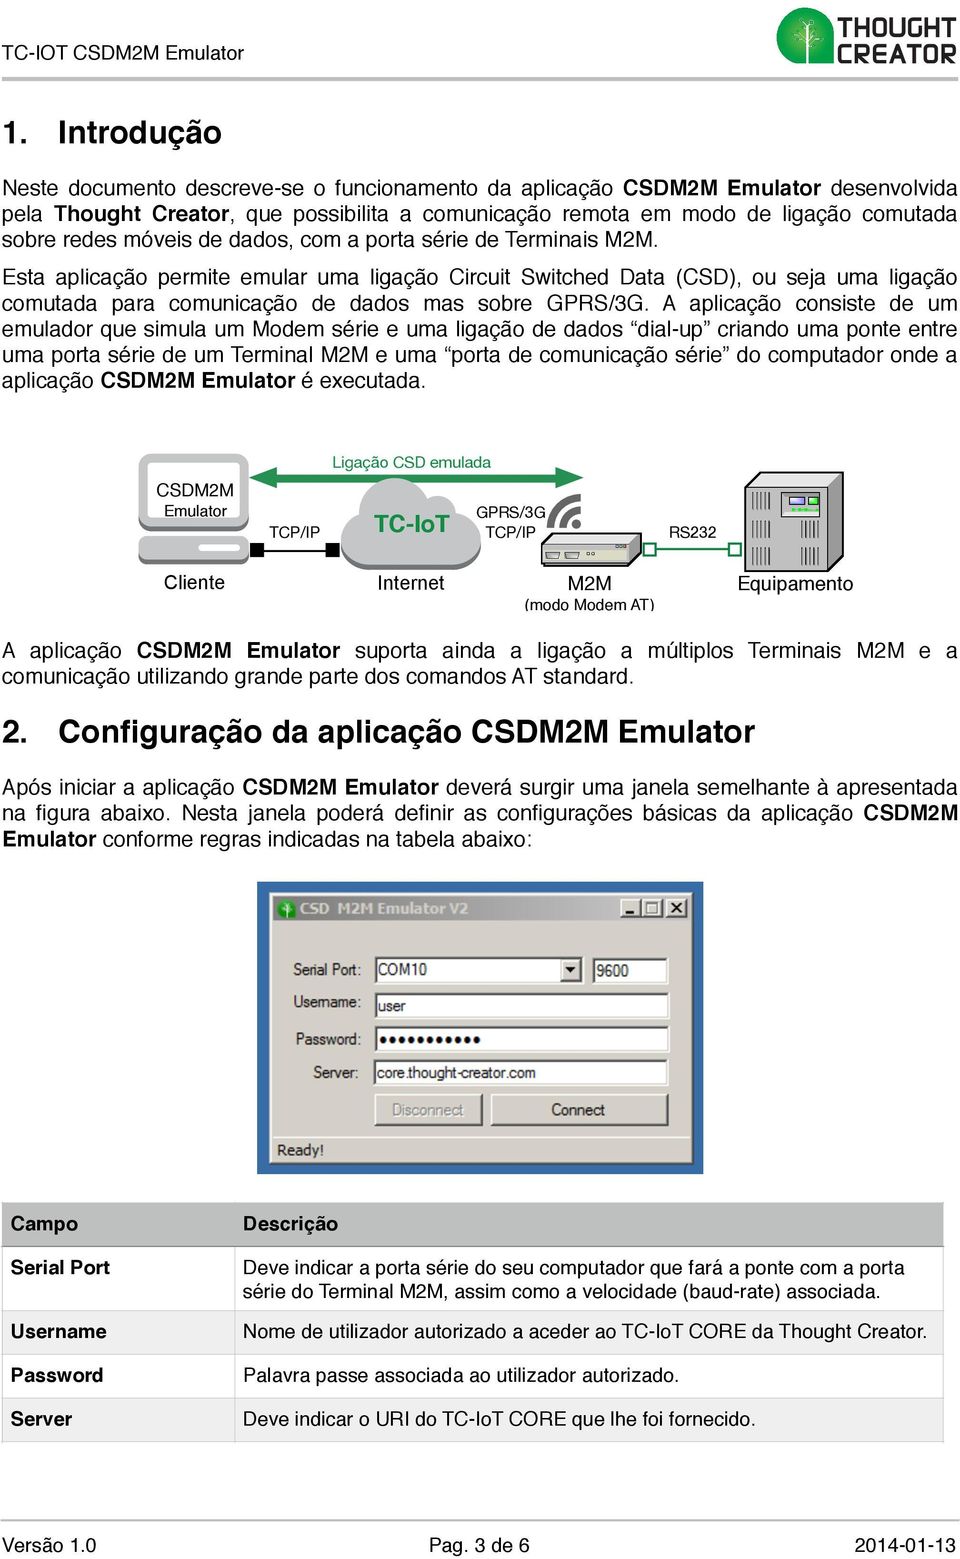 A aplicação consiste de um emulador que simula um Modem série e uma ligação de dados dial-up criando uma ponte entre uma porta série de um Terminal M2M e uma porta de comunicação série do computador